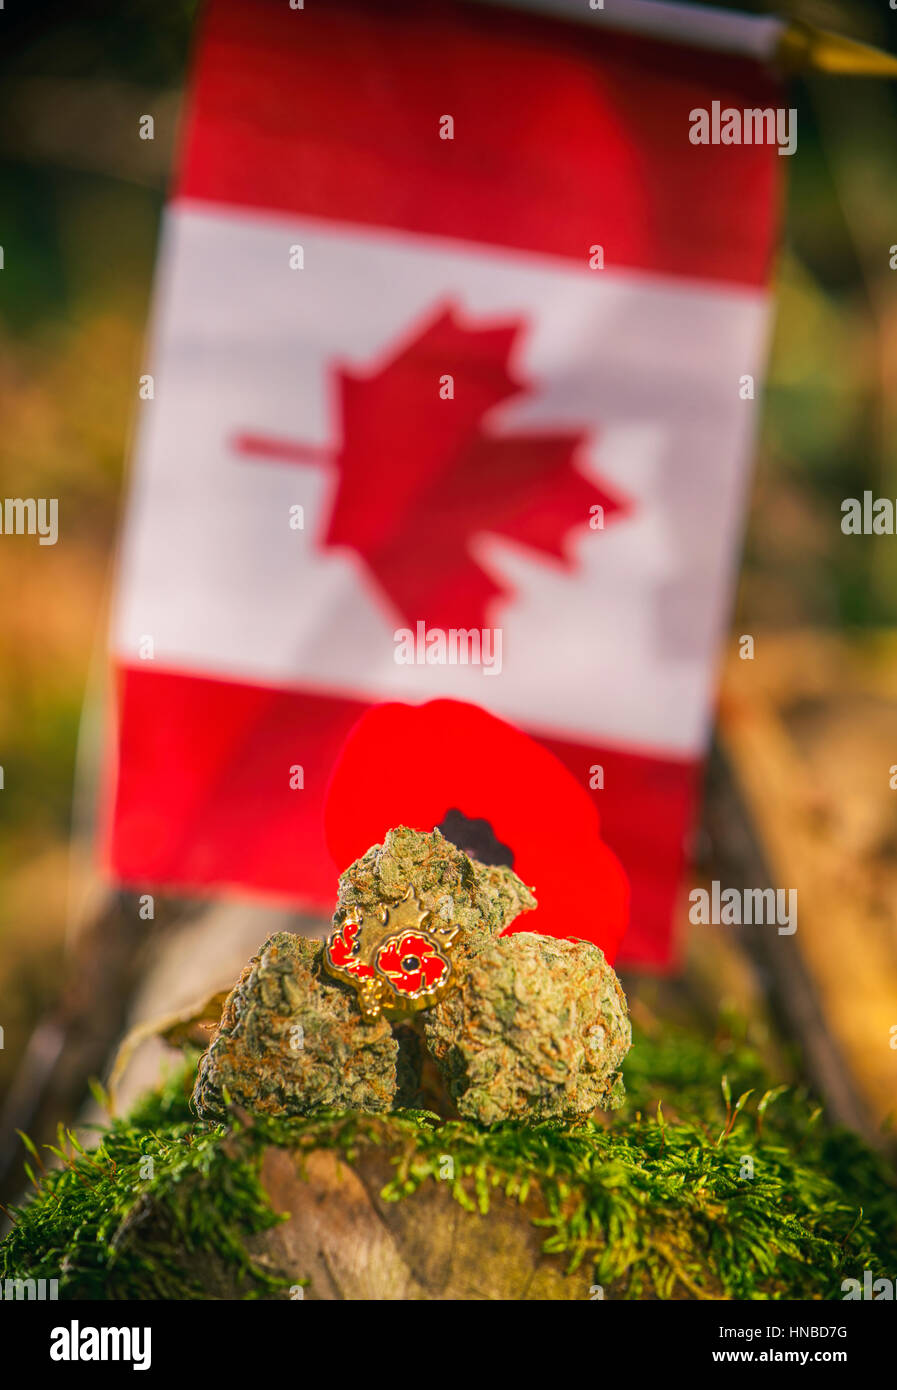 Dettaglio della cannabis gemme disposte nella parte anteriore di una bandiera canadese - medical marijuana concept Foto Stock